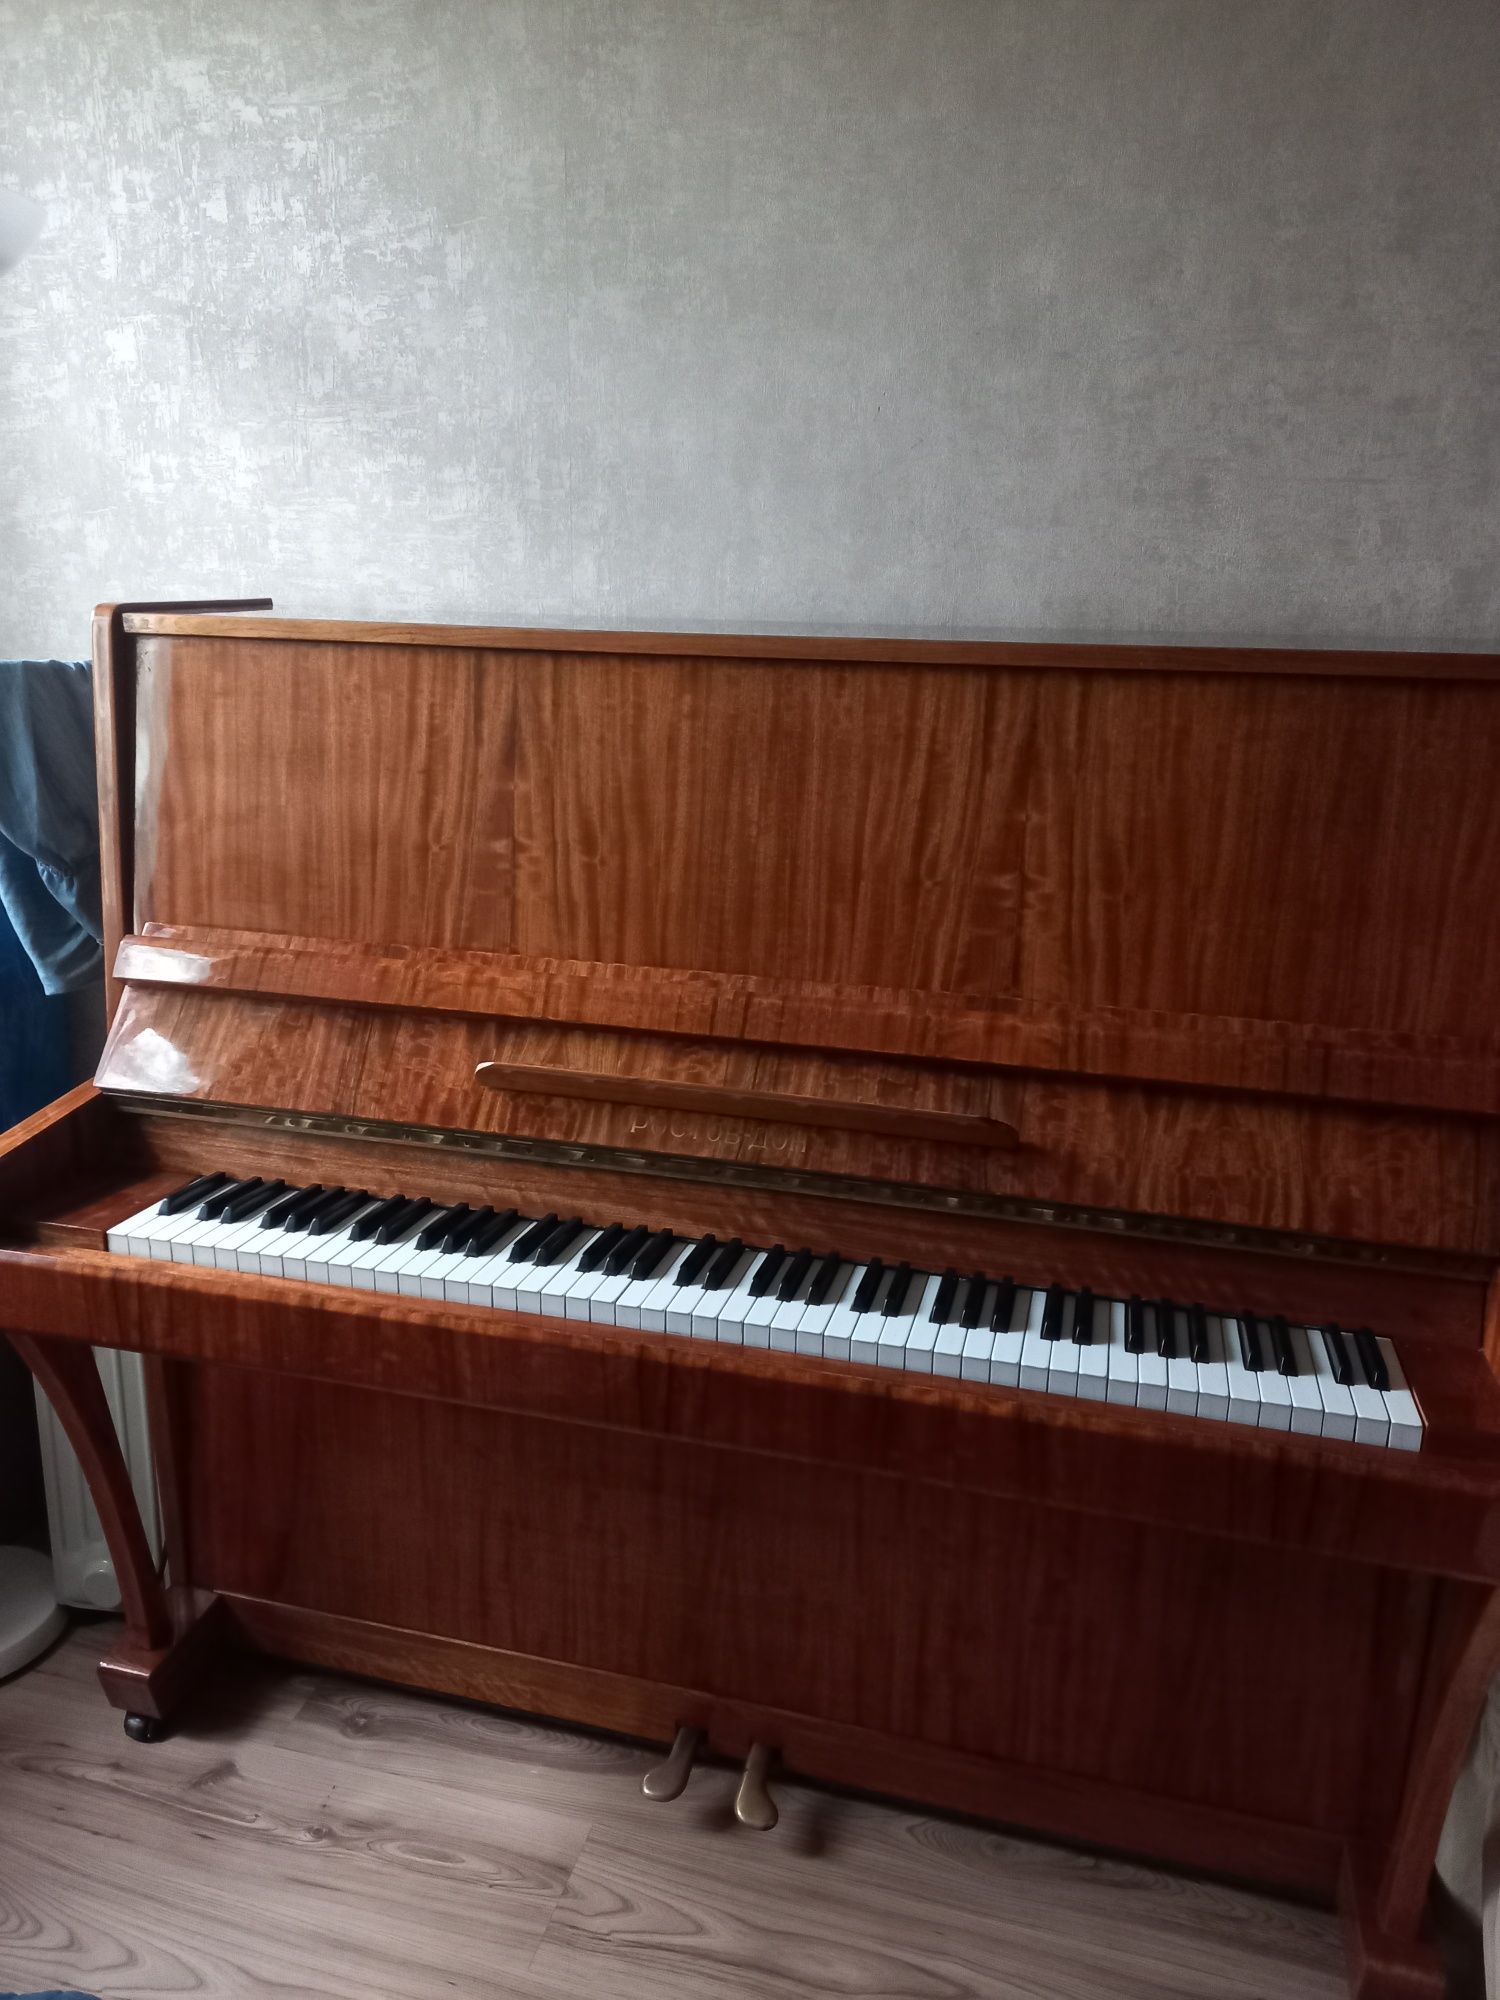 Продам пианино Ростов-Дон